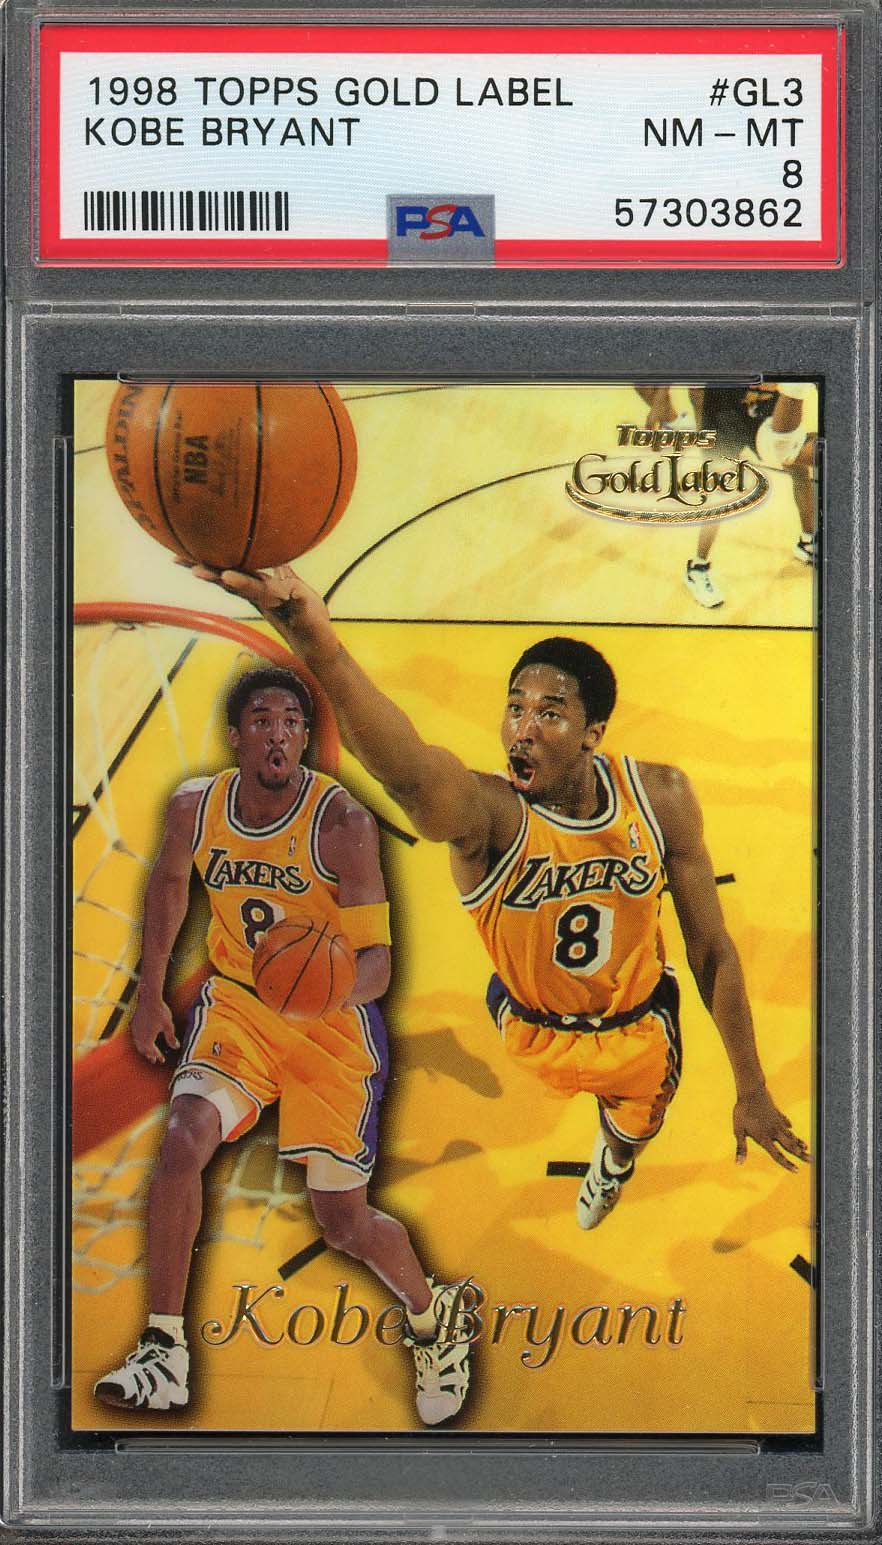 Kobe Bryant 1998 Topps Gold Label Basketball Card #GL3 Graded PSA 8